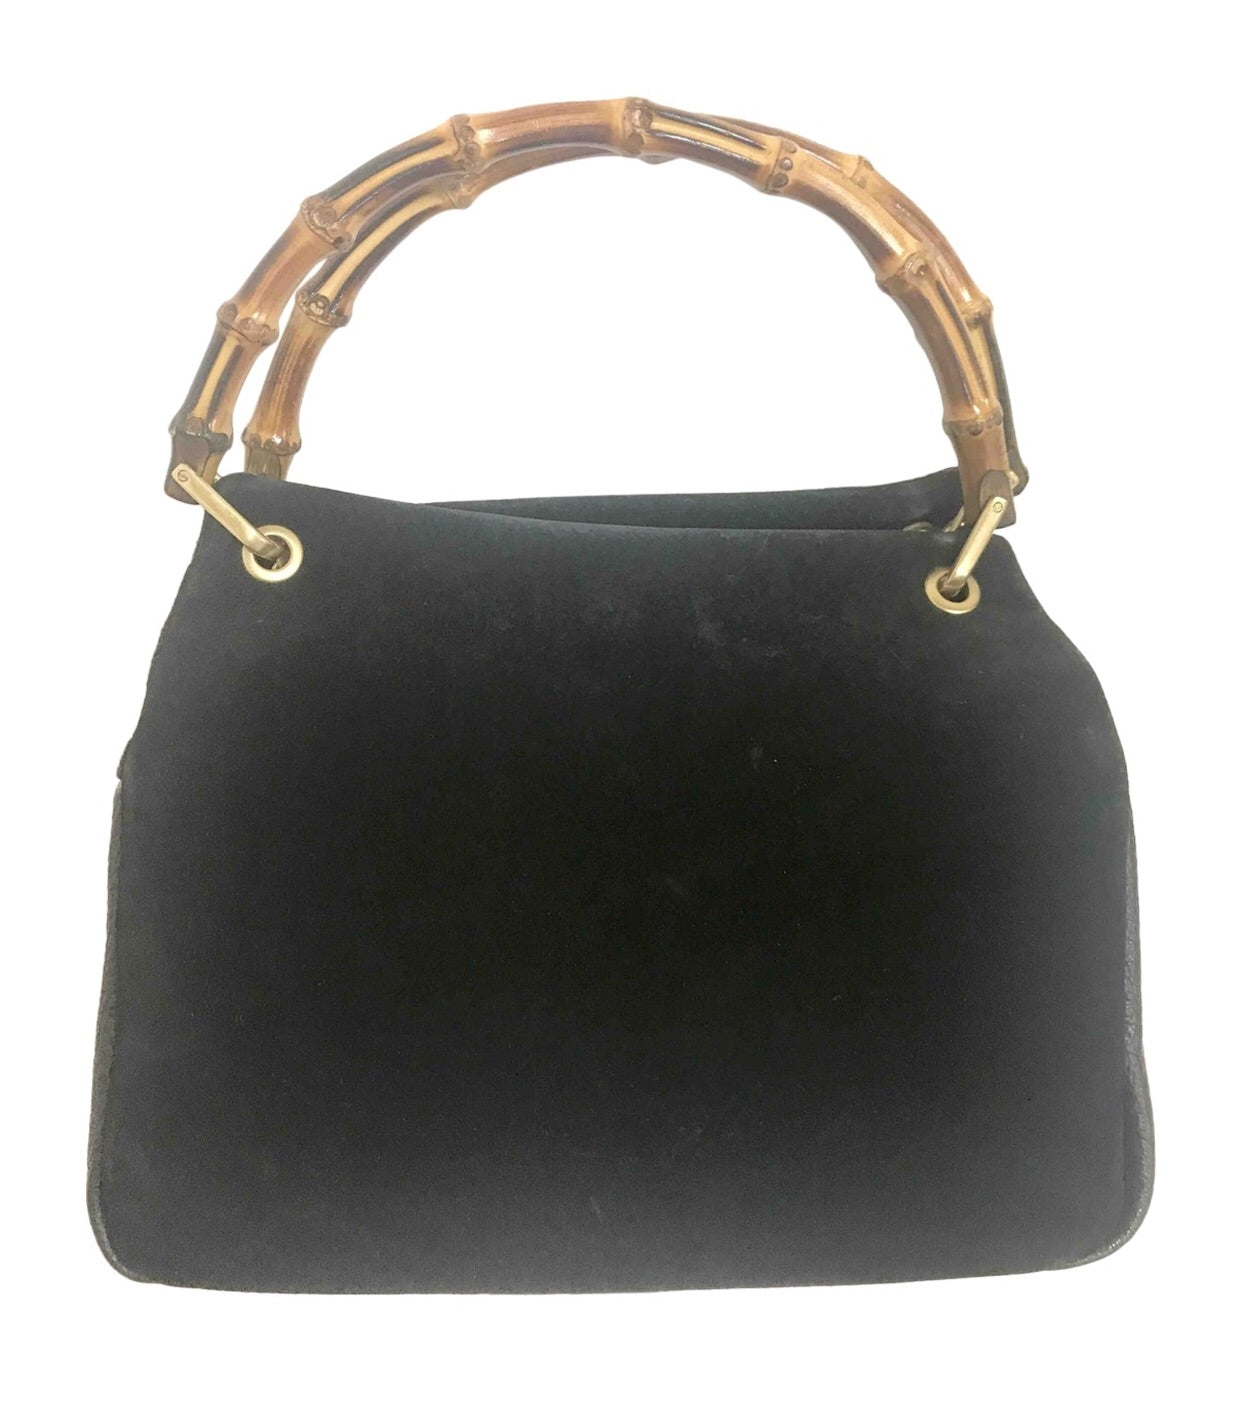 Suede shoulder bag - Black - Ladies | H&M IN